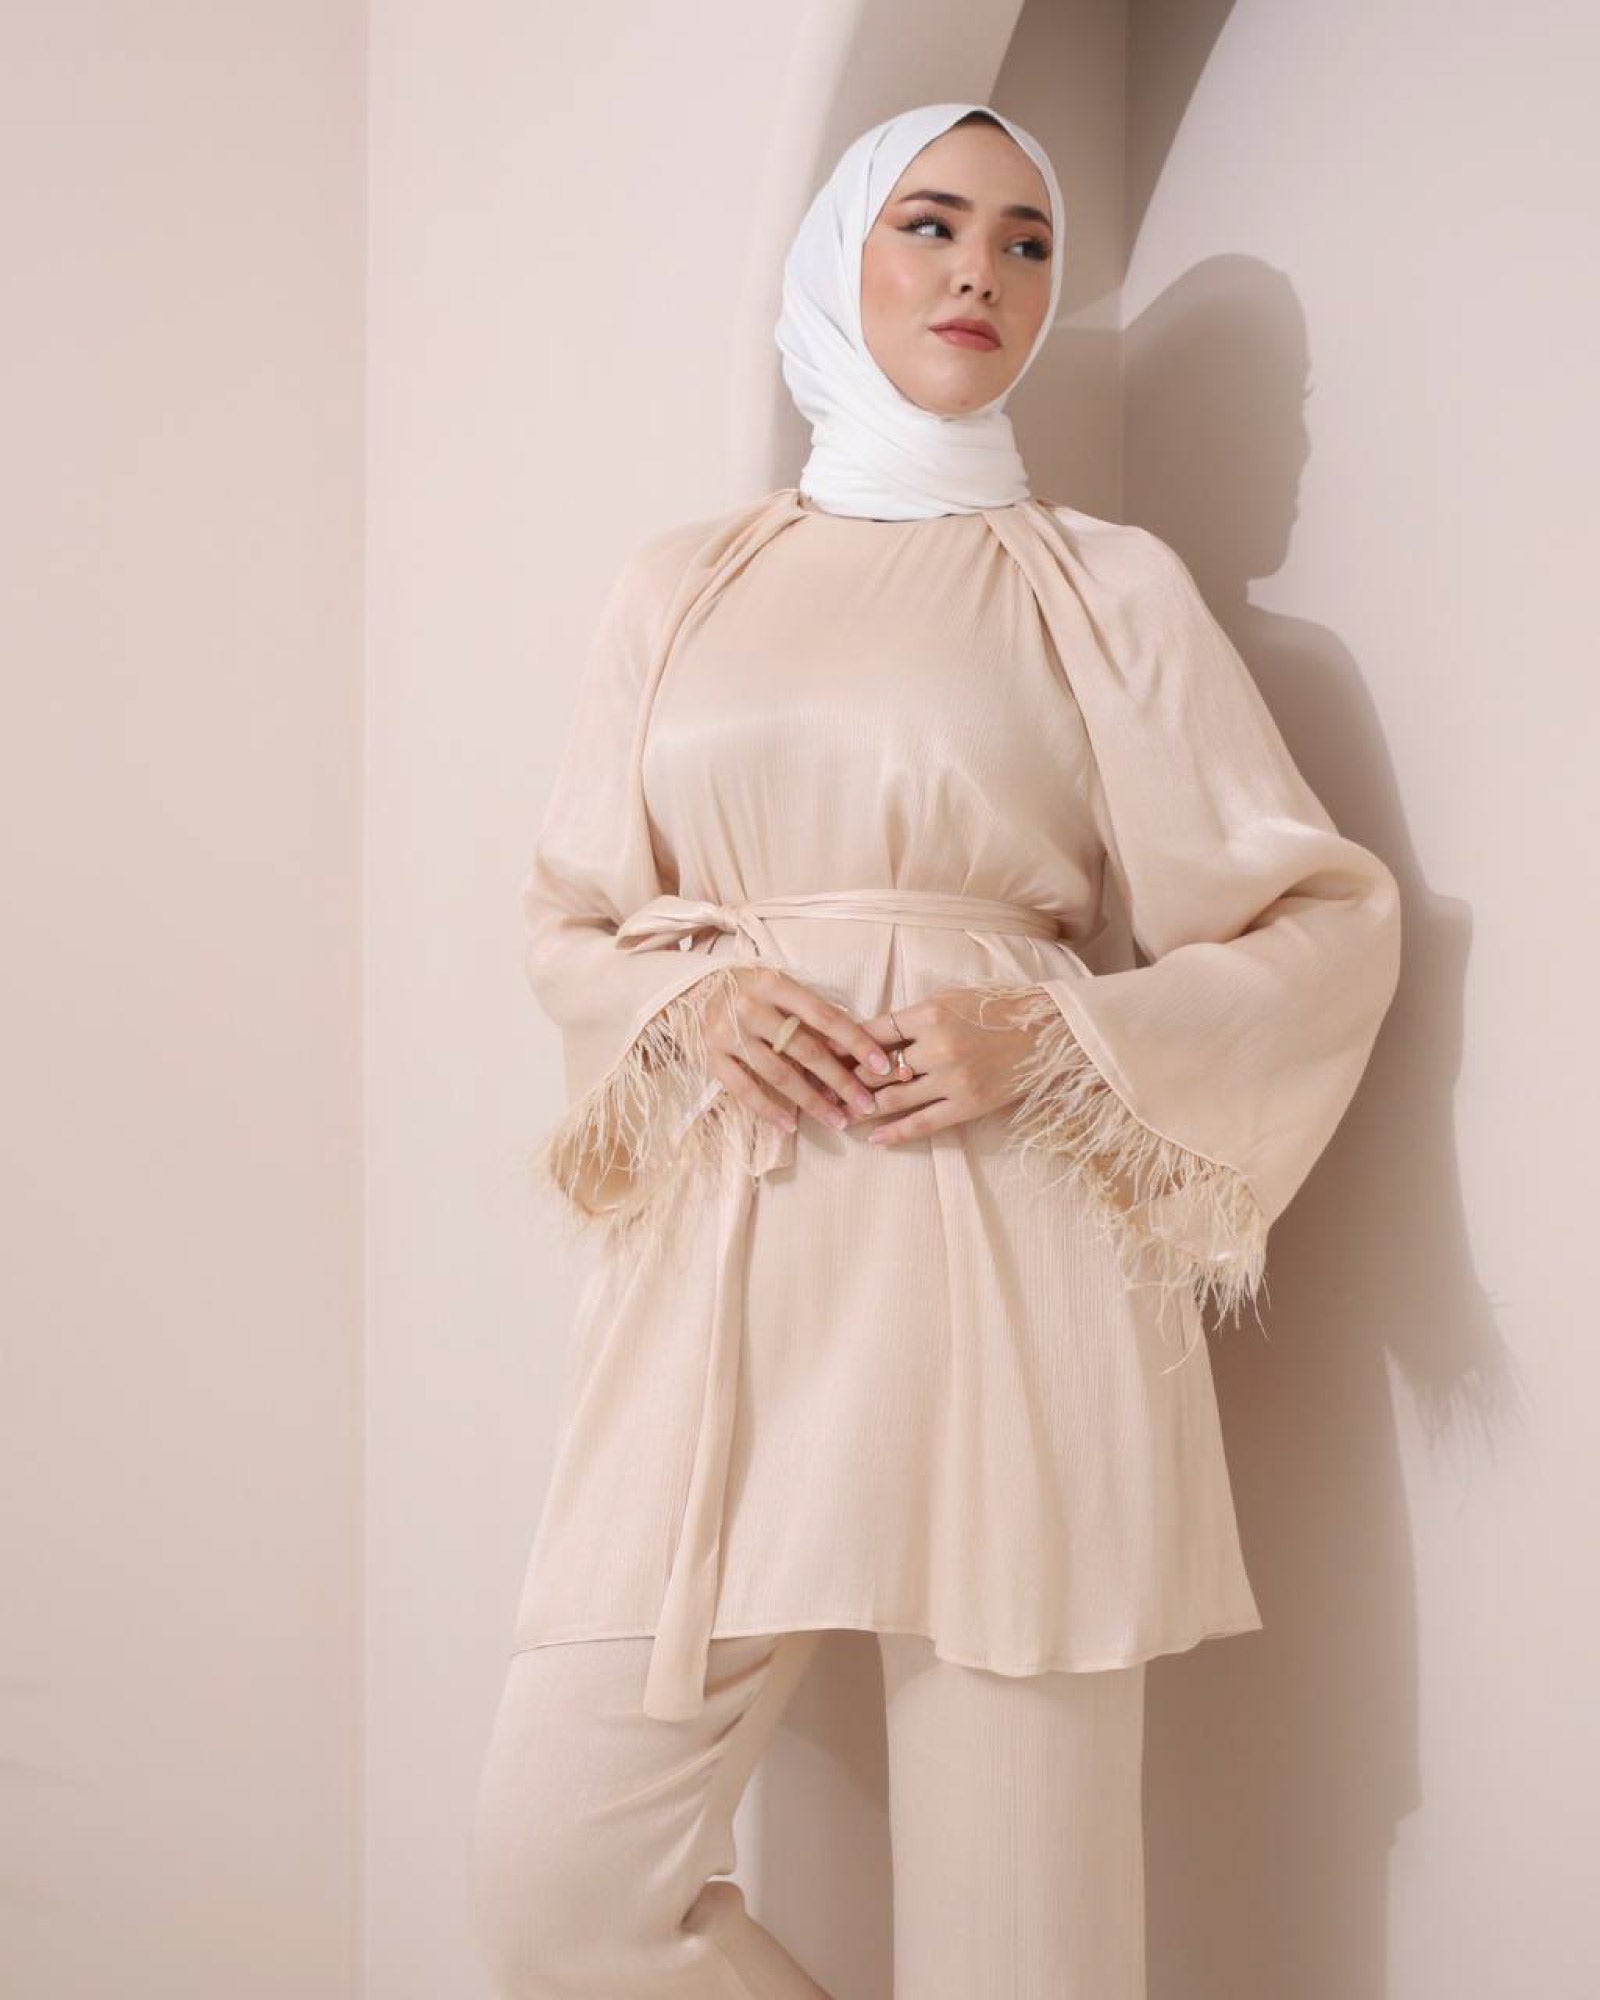 Hijab-Zweiteiler Satin Stoff mit Federverzierung an den Ärmeln